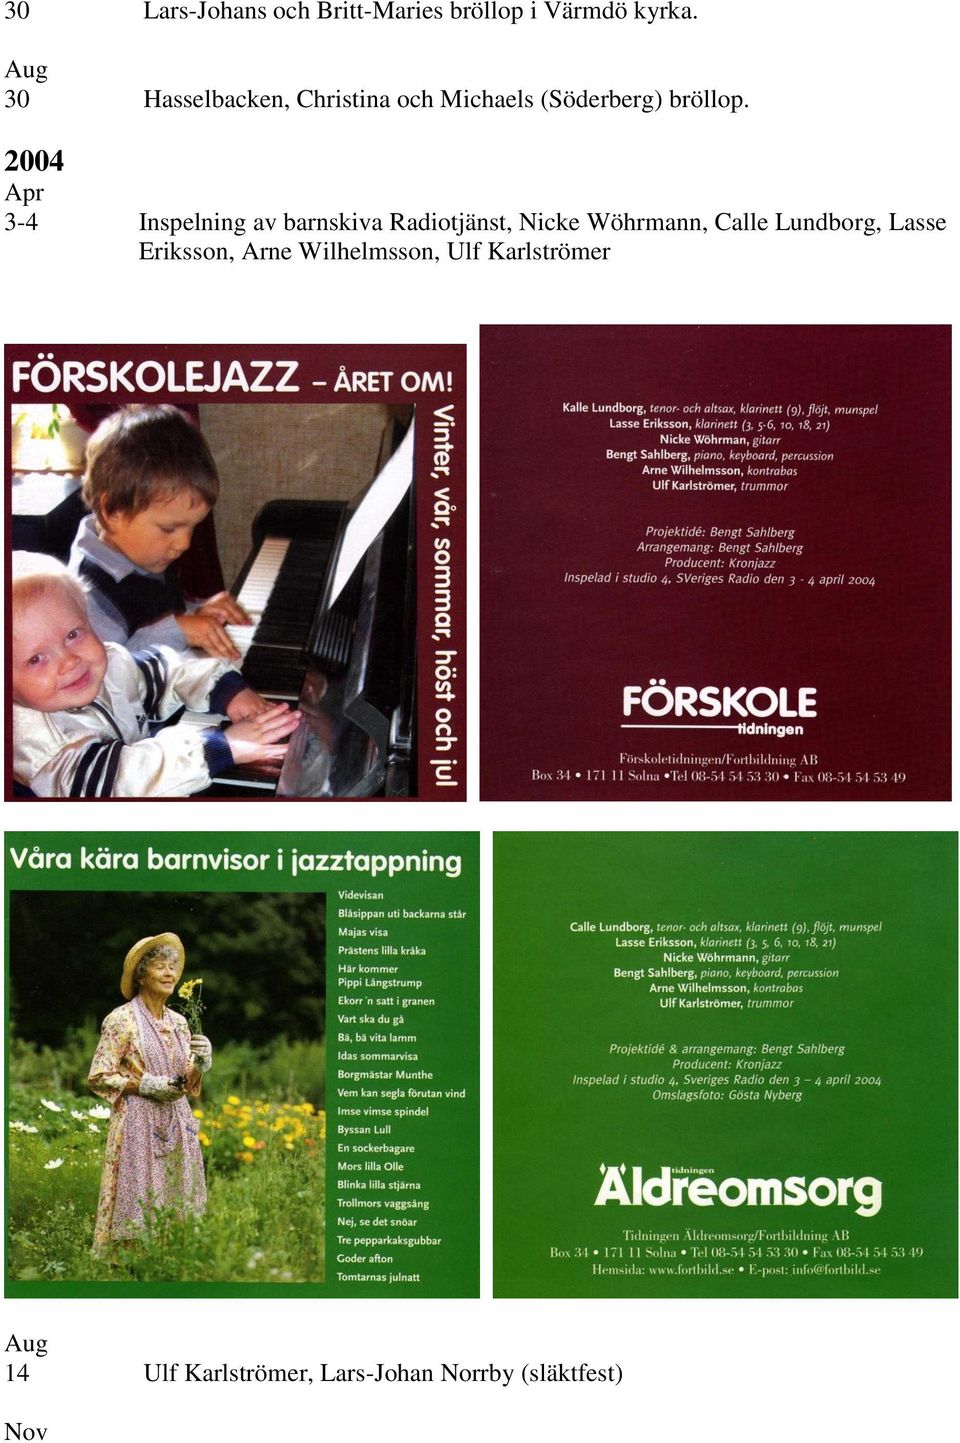 2004 Apr 3-4 Inspelning av barnskiva Radiotjänst, Nicke Wöhrmann, Calle